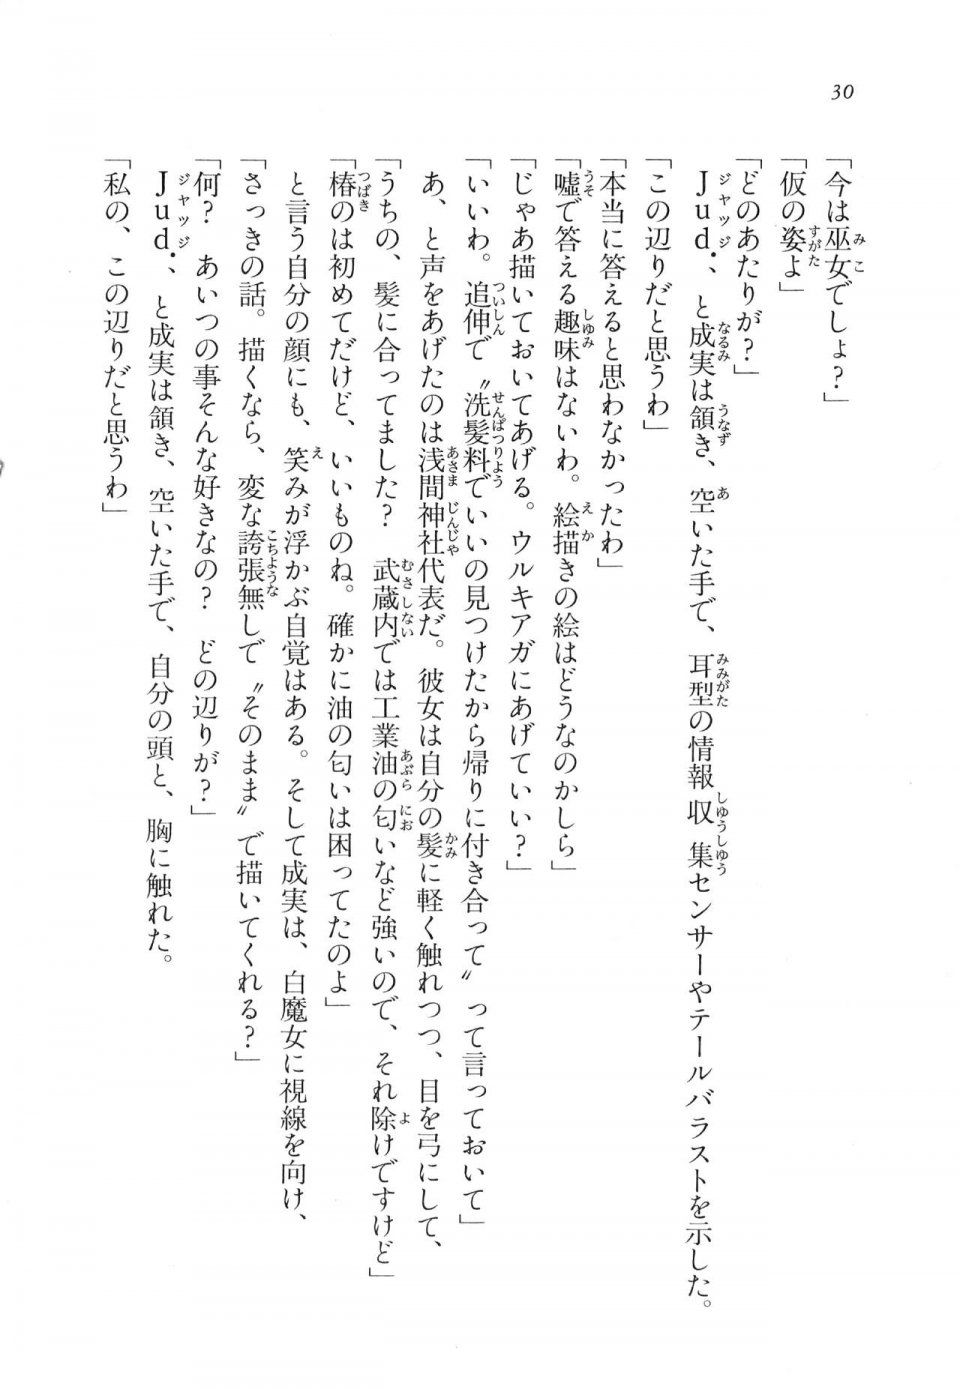 Kyoukai Senjou no Horizon LN Vol 11(5A) - Photo #31